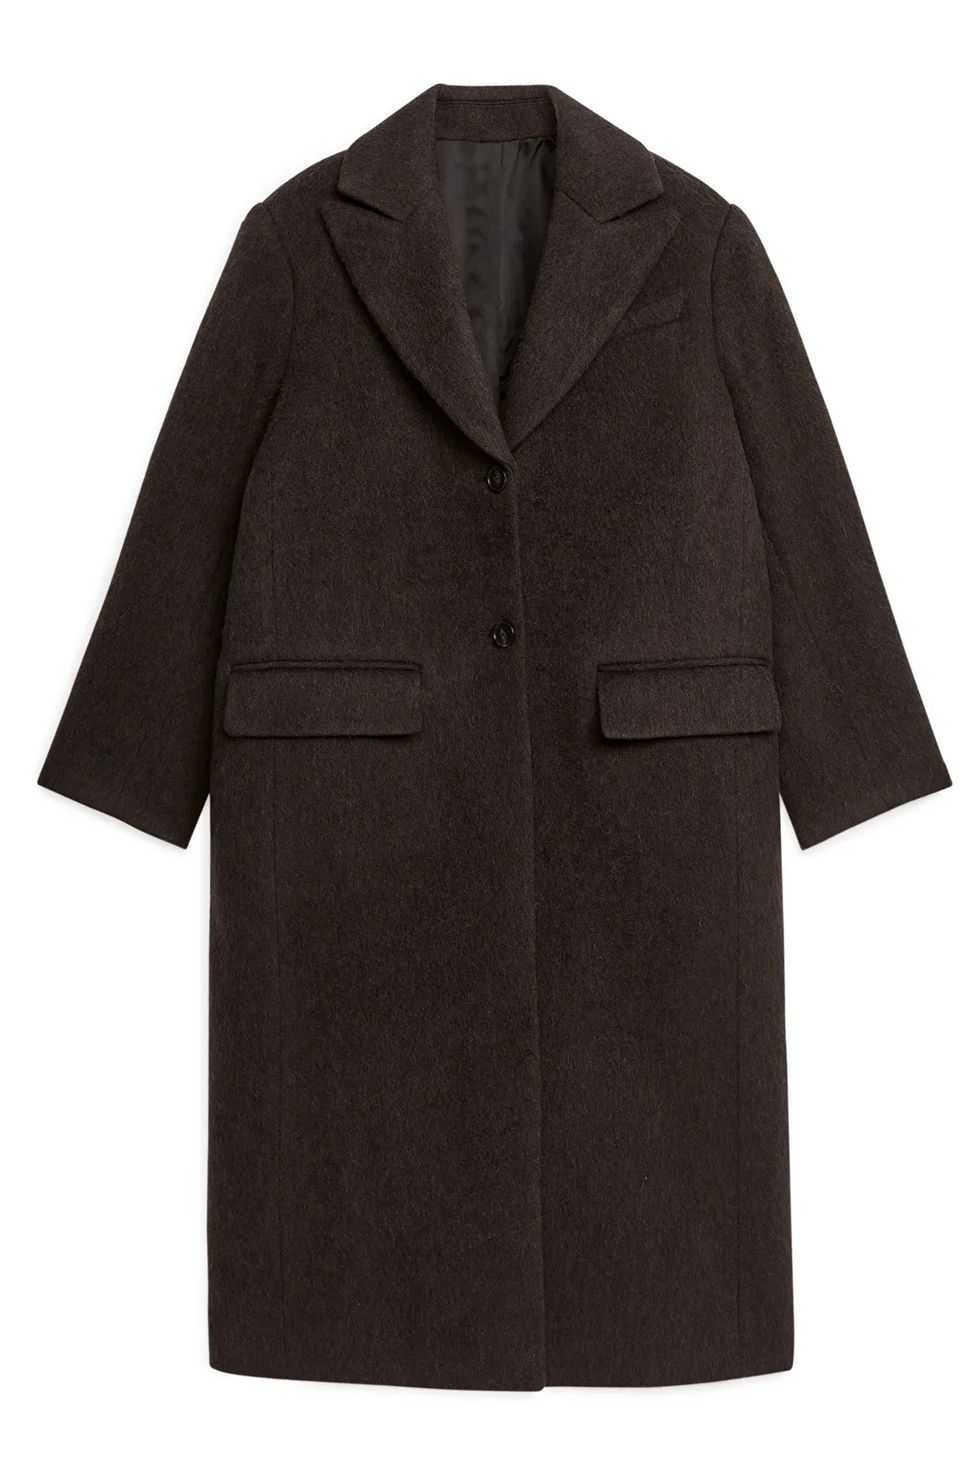 Пальто, пуховики и куртки, которые мы особо хотим видеть в своем гардеробе этой зимой